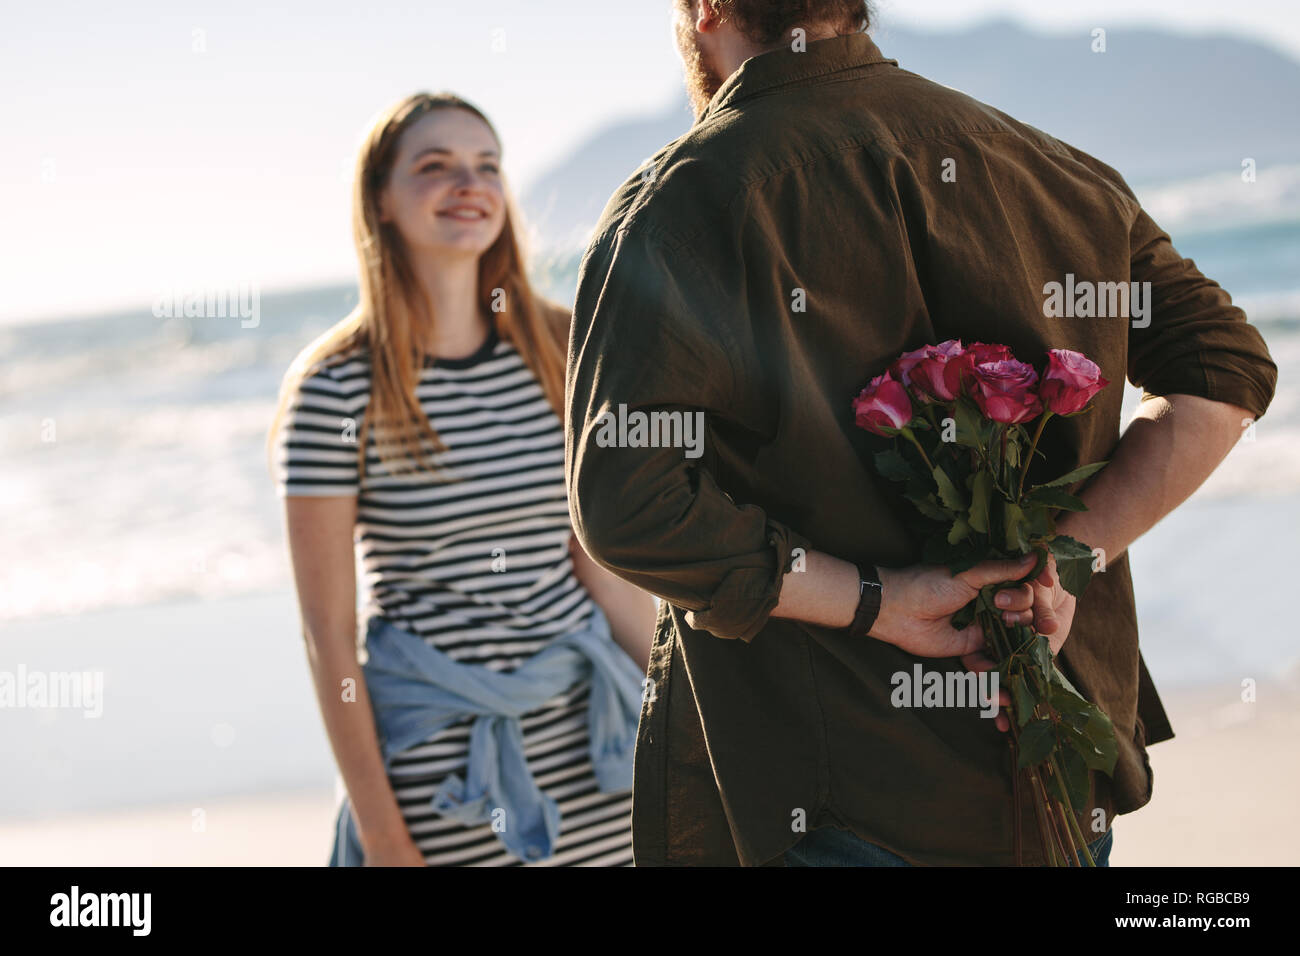 Junges Paar in Liebe auf romantischen Datum. Mann mit Überraschung Bündel Rosen für schöne junge Frau am Strand. Stockfoto